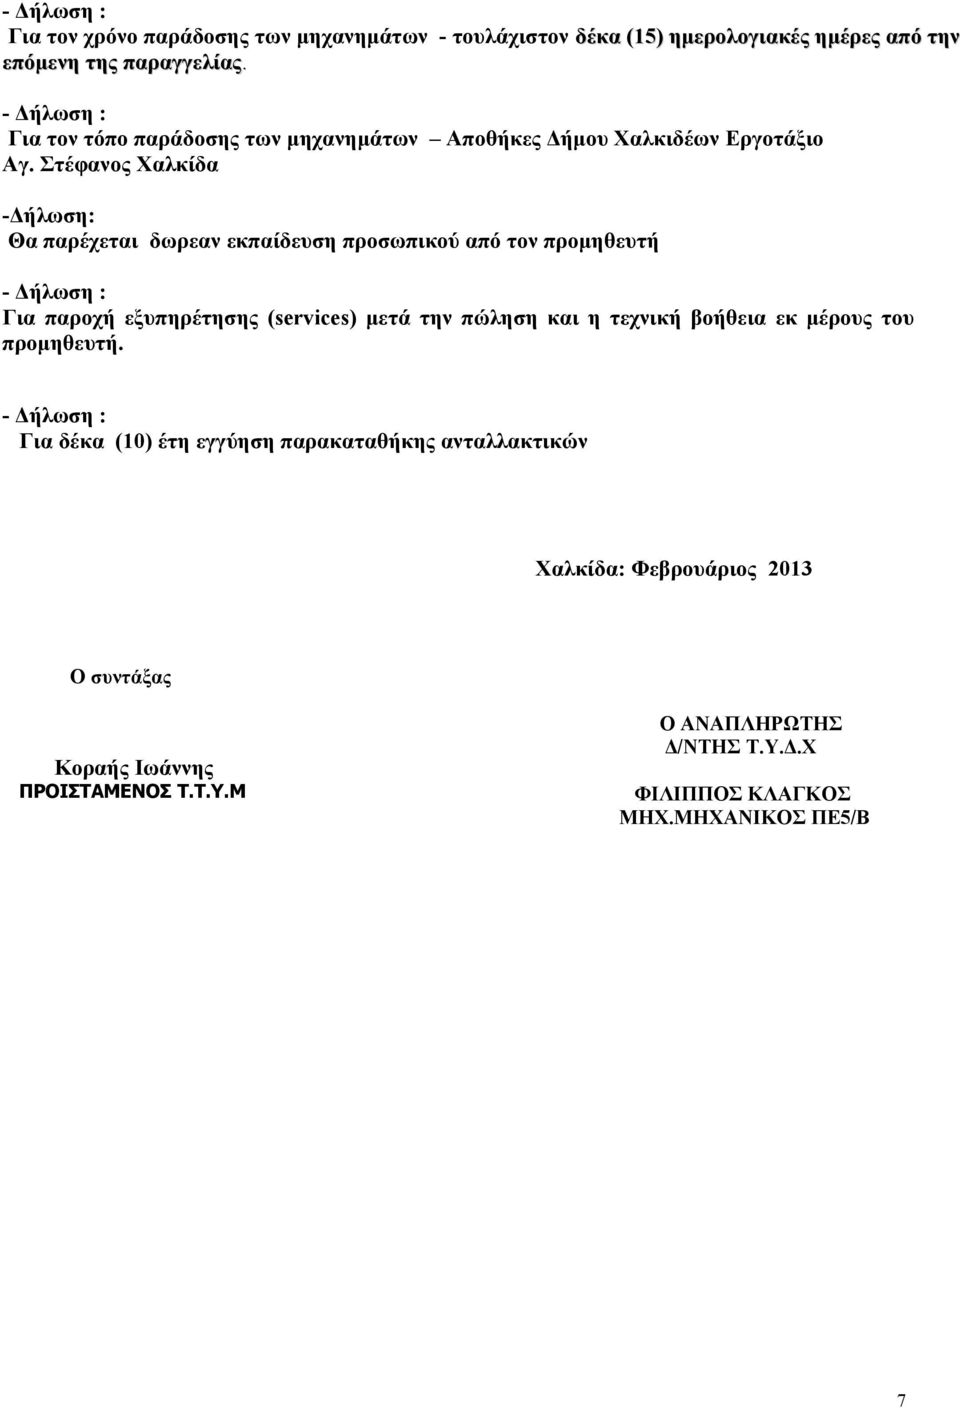 Στέφανος Χαλκίδα -Δήλωση: Θα παρέχεται δωρεαν εκπαίδευση προσωπικού από τον προμηθευτή - Δήλωση : Για παροχή εξυπηρέτησης (services) μετά την πώληση και η